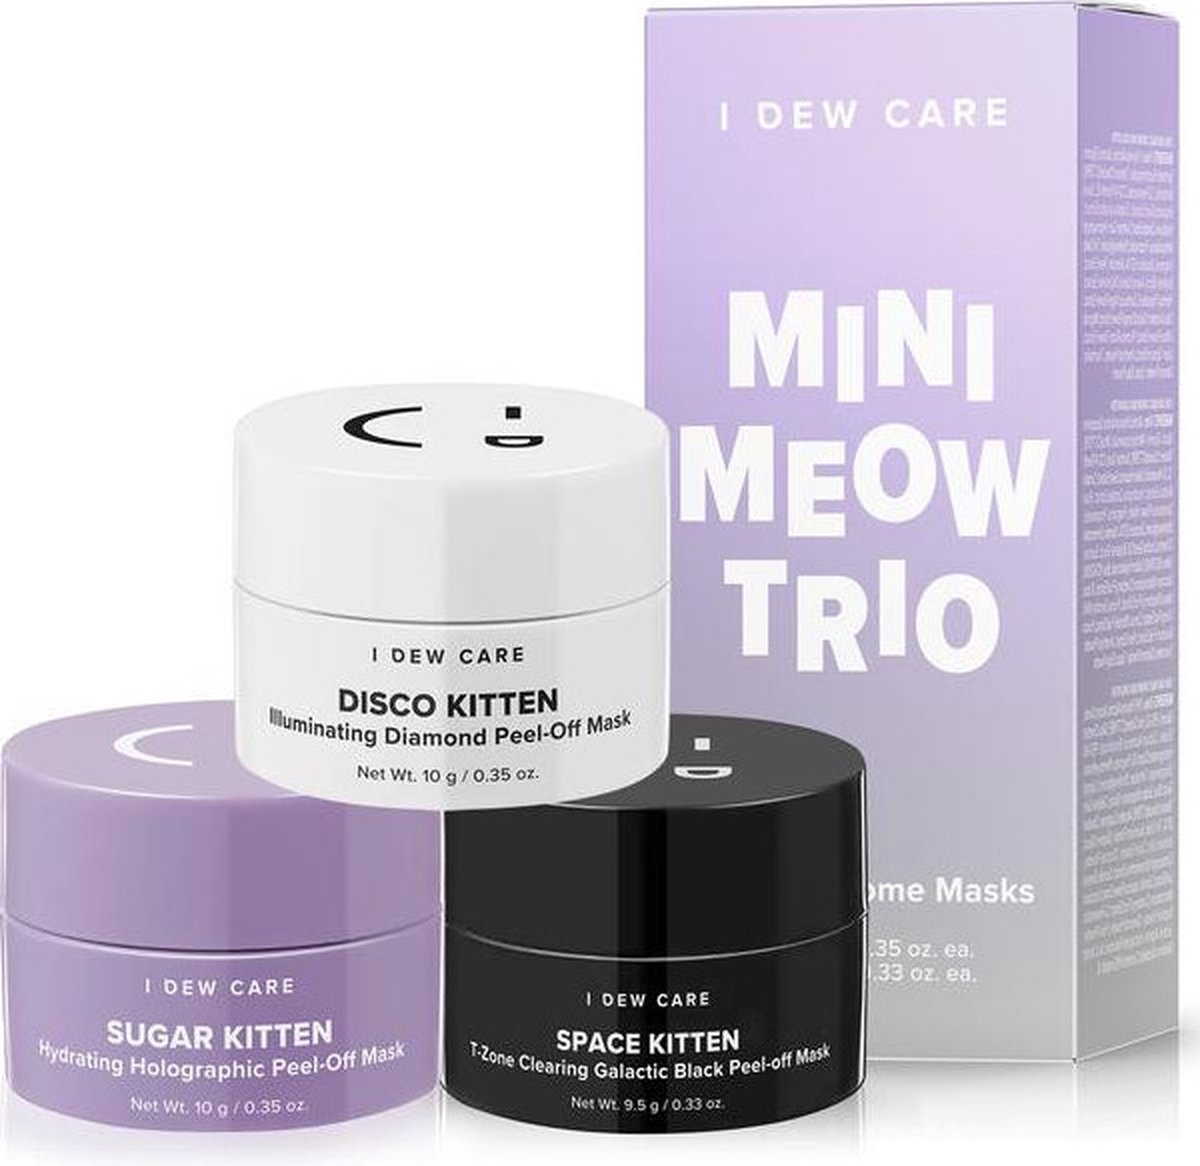 I Dew Care Mini Meow Trio Peel-Off Mask Set